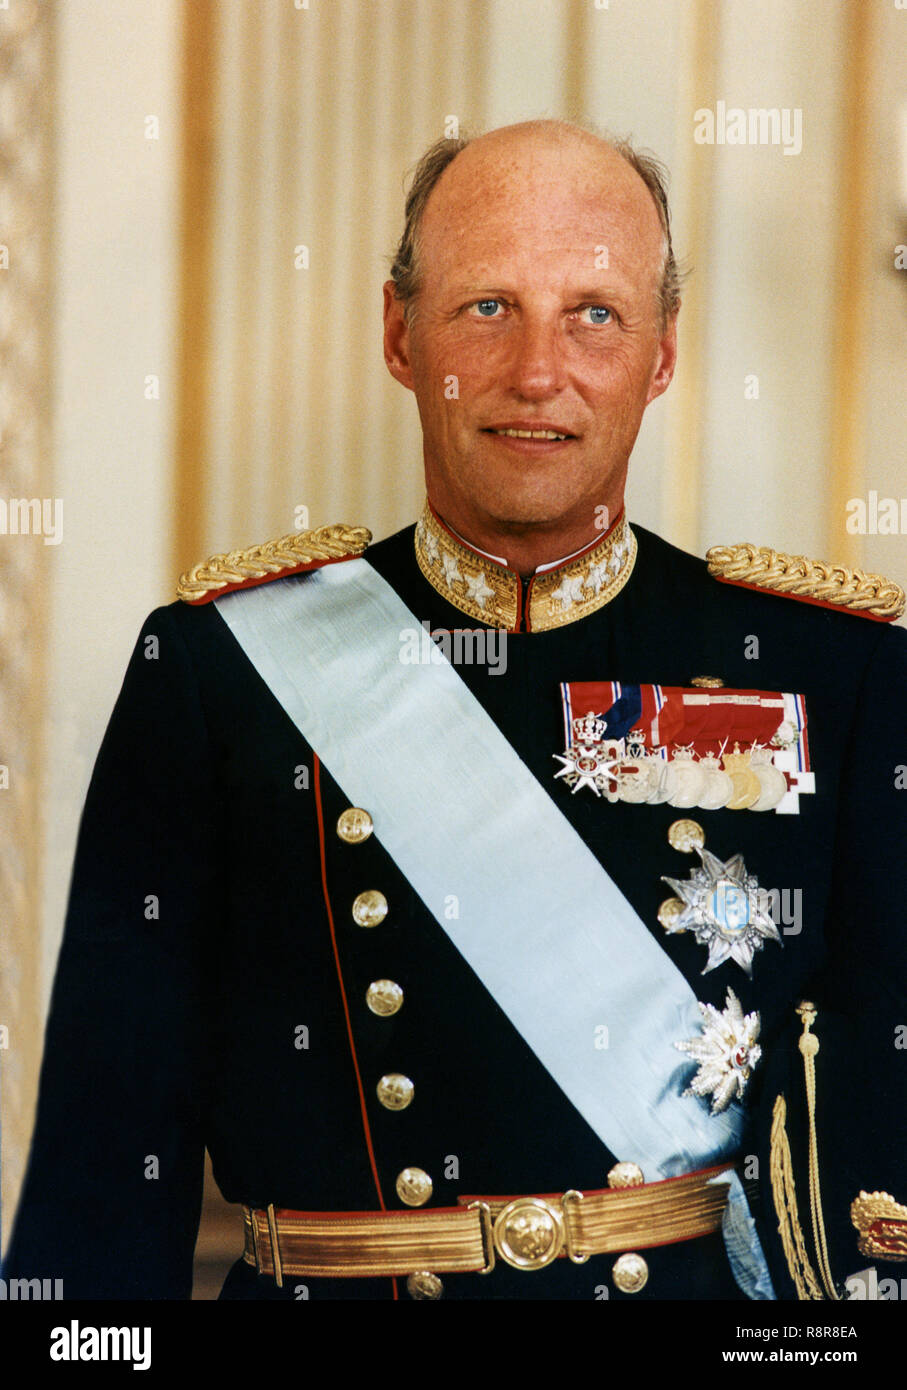 König Harald von Norwegen in Uniform und Regalia Stockfoto